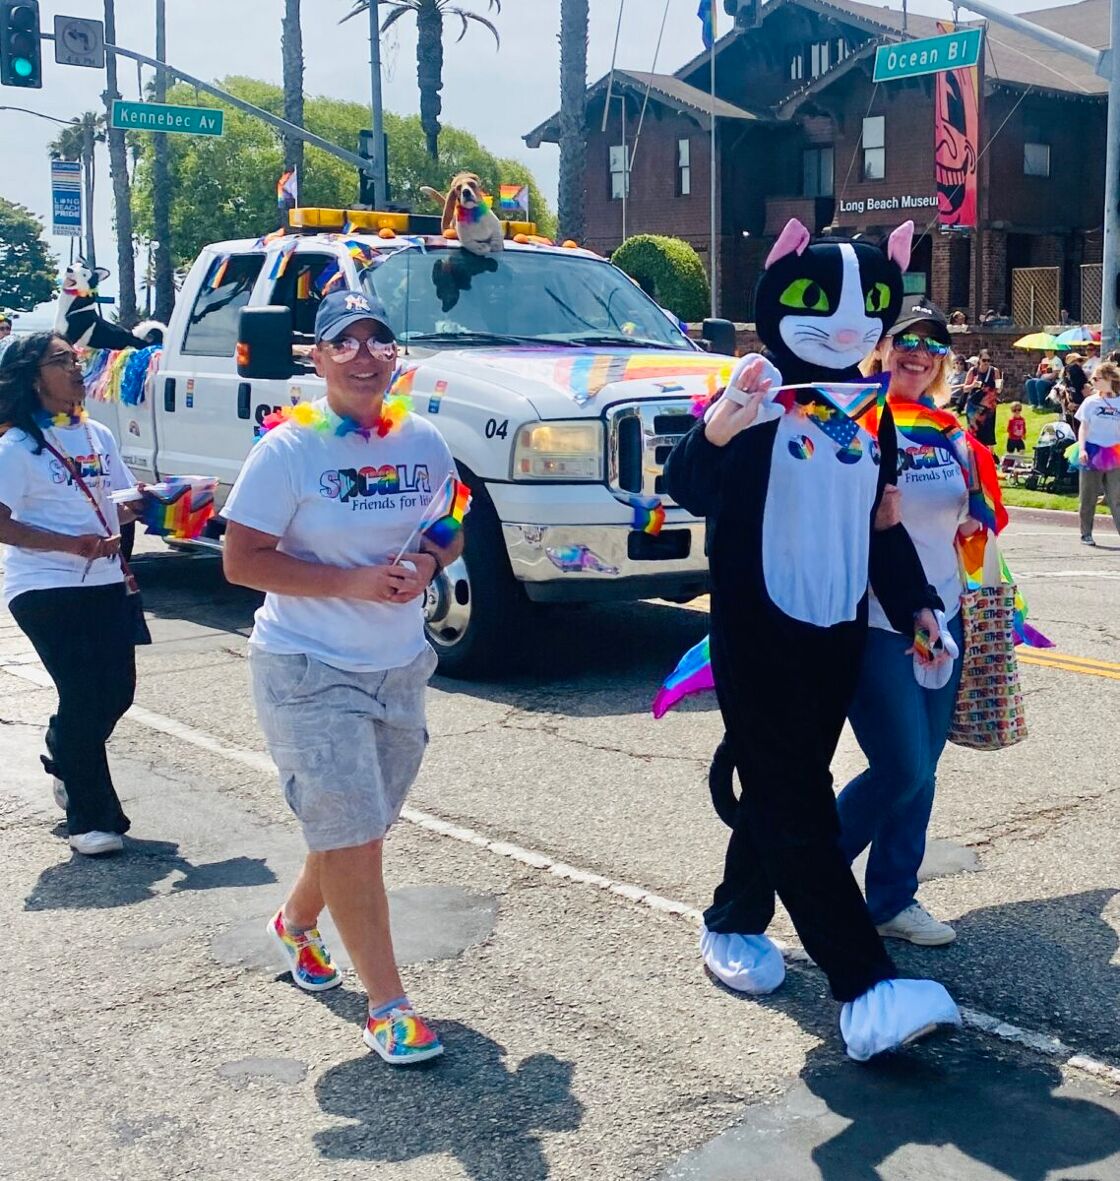 Flag waver in van at Long Beach Pride parade